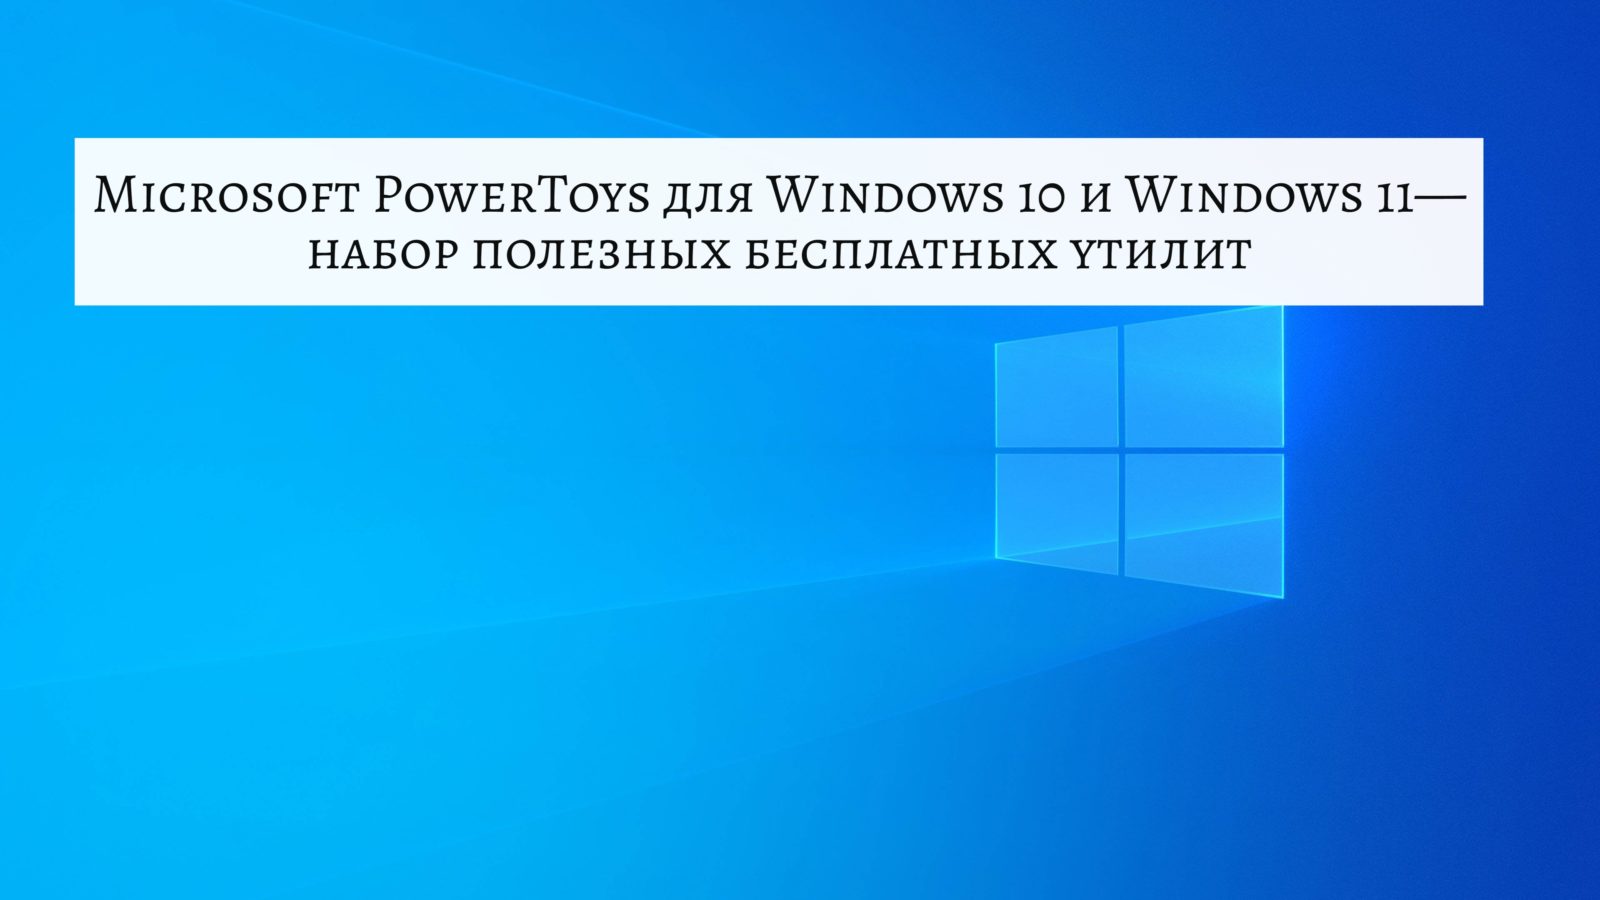 Microsoft PowerToys для Windows 10 и Windows 11 — набор полезных бесплатных утилит